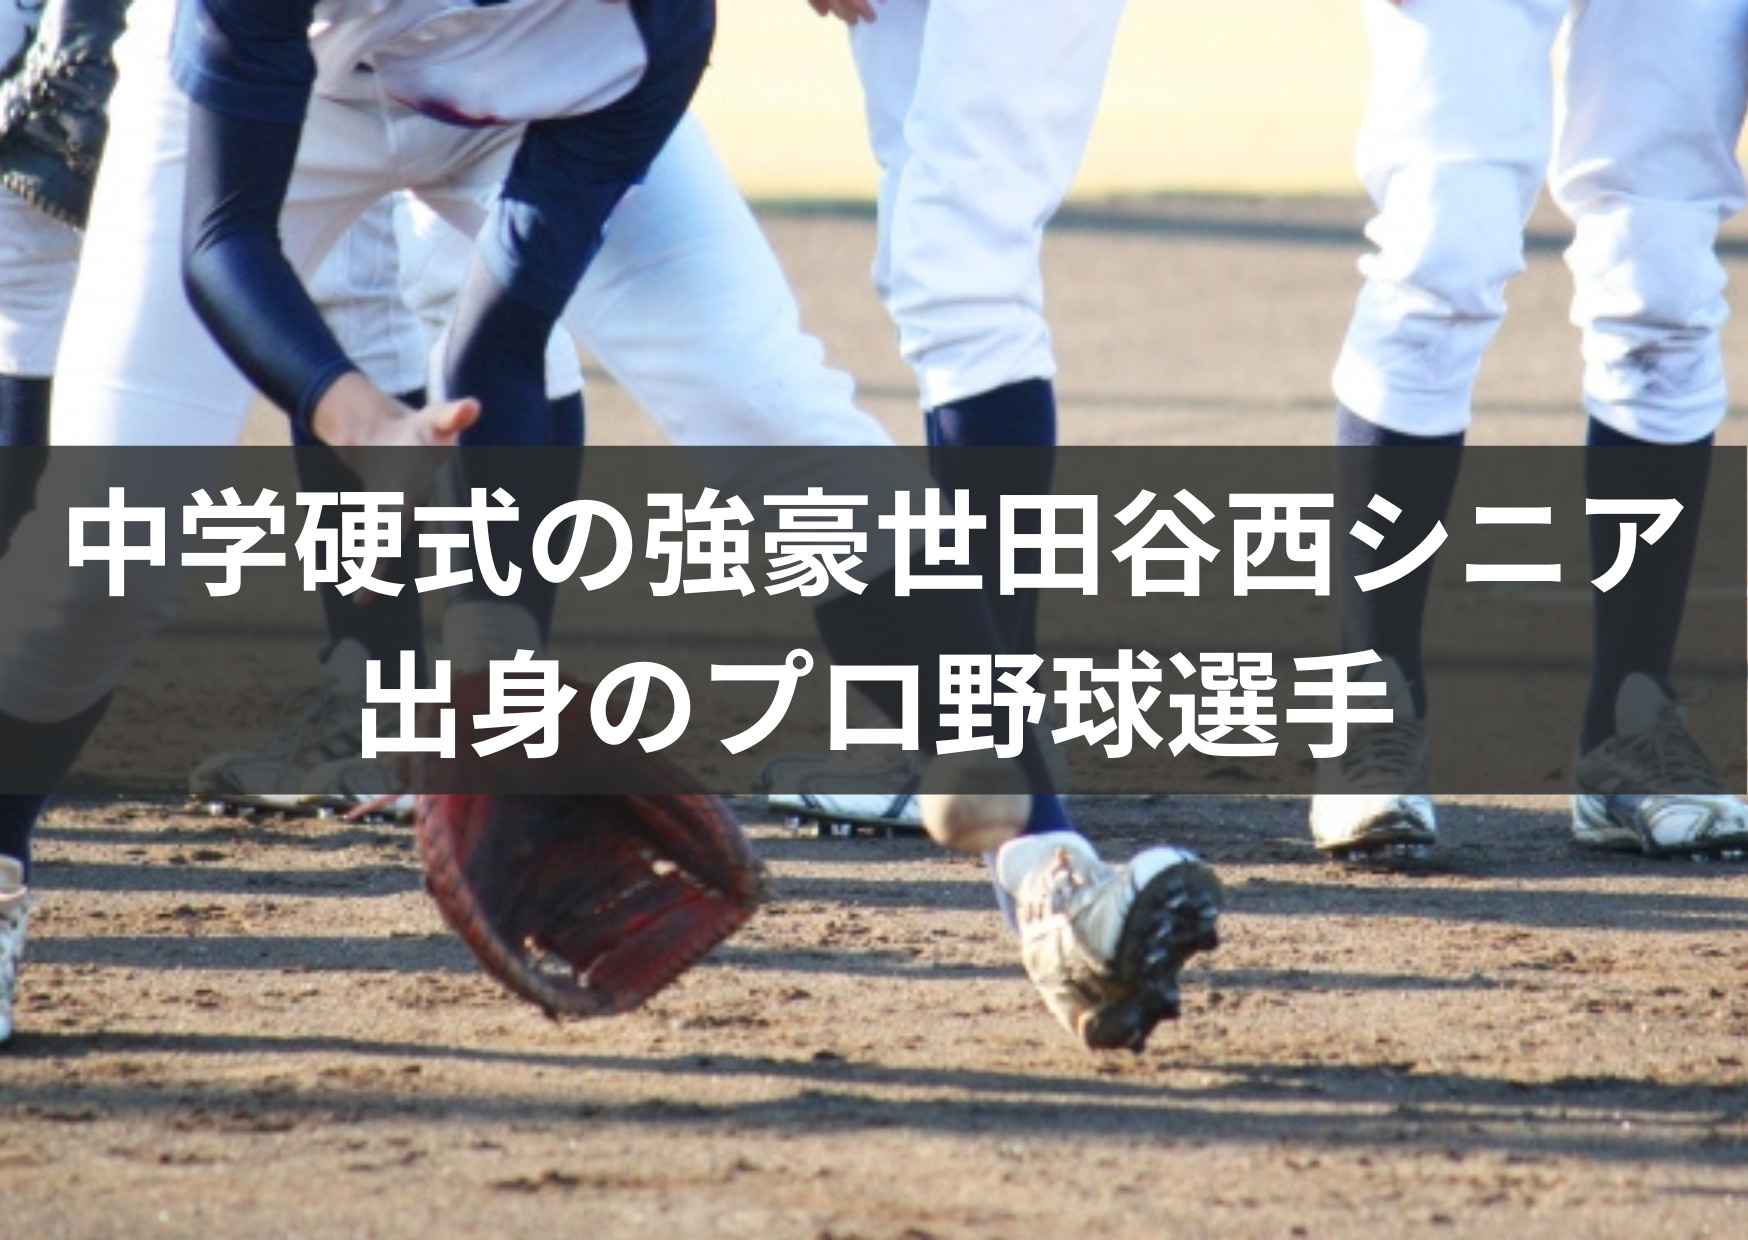 世田谷西シニア出身のプロ野球選手